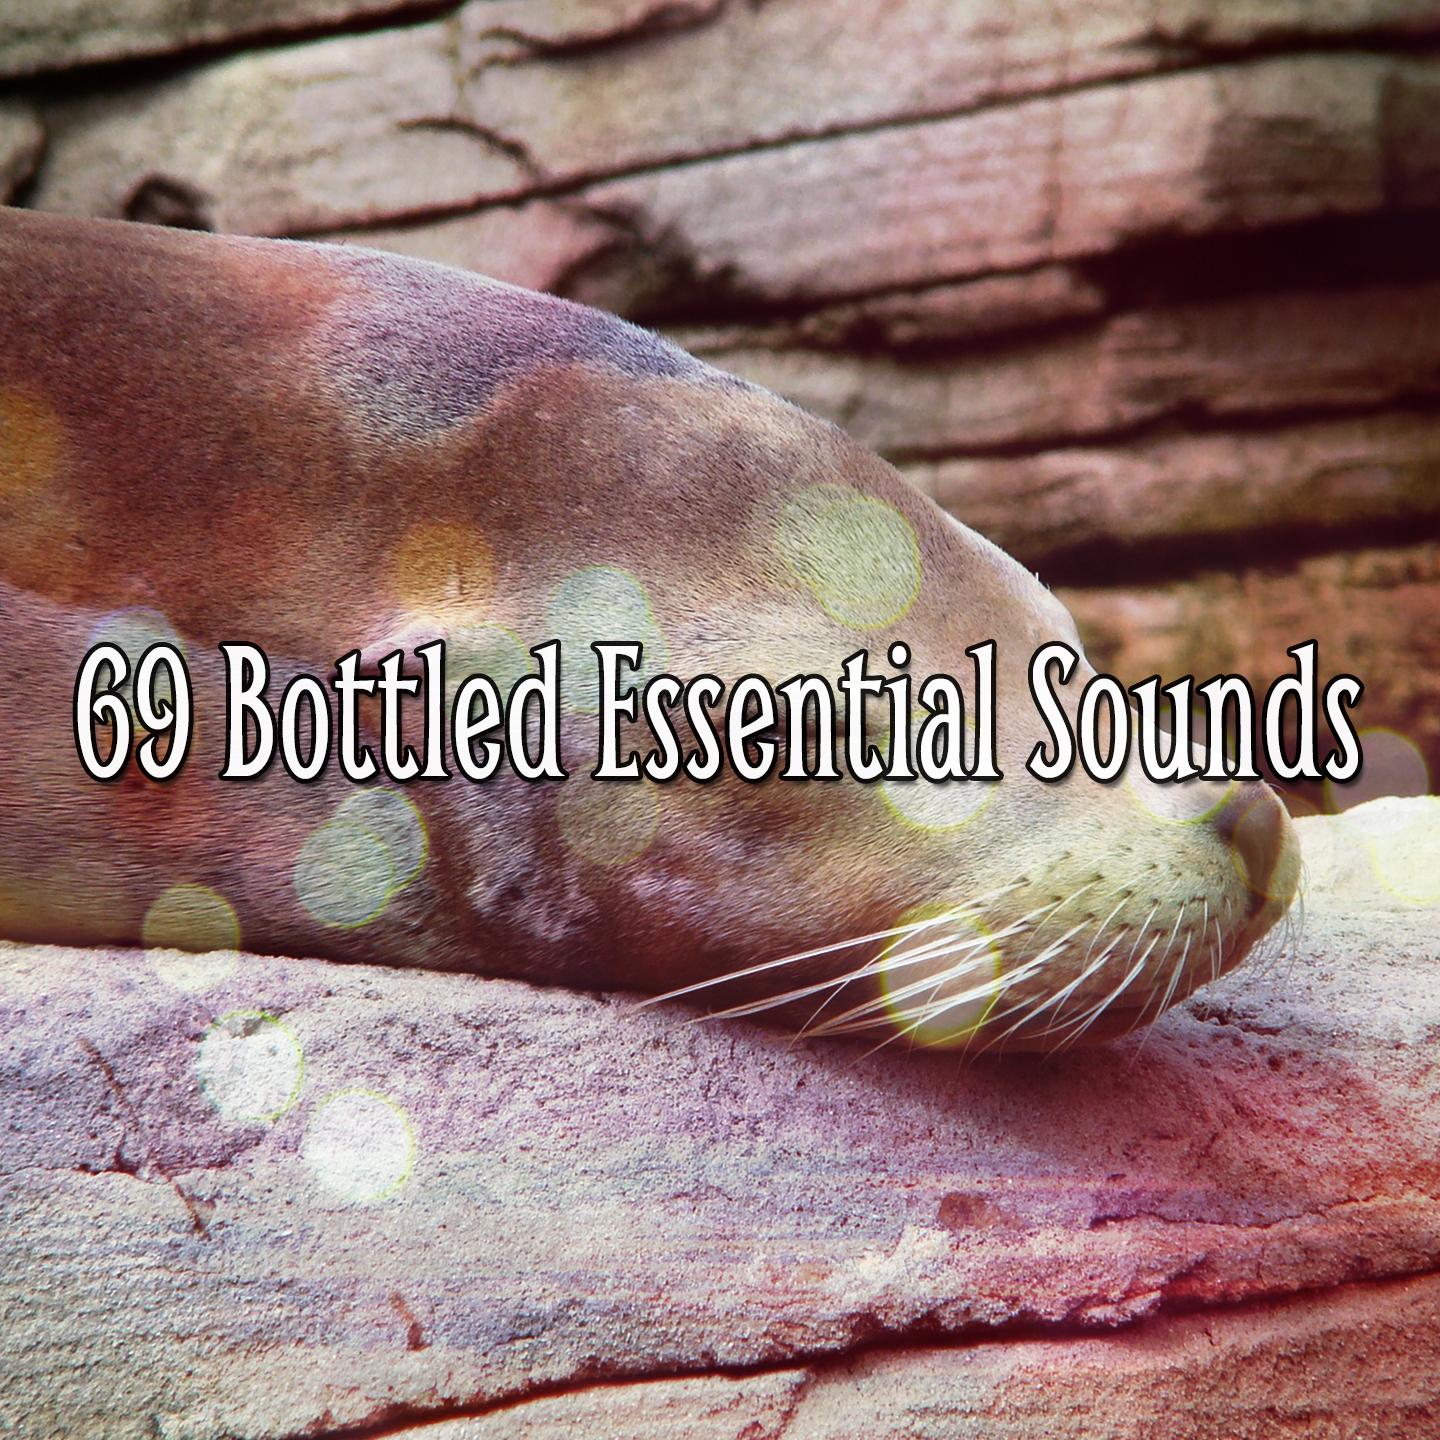 69 Bottled Essential Sounds